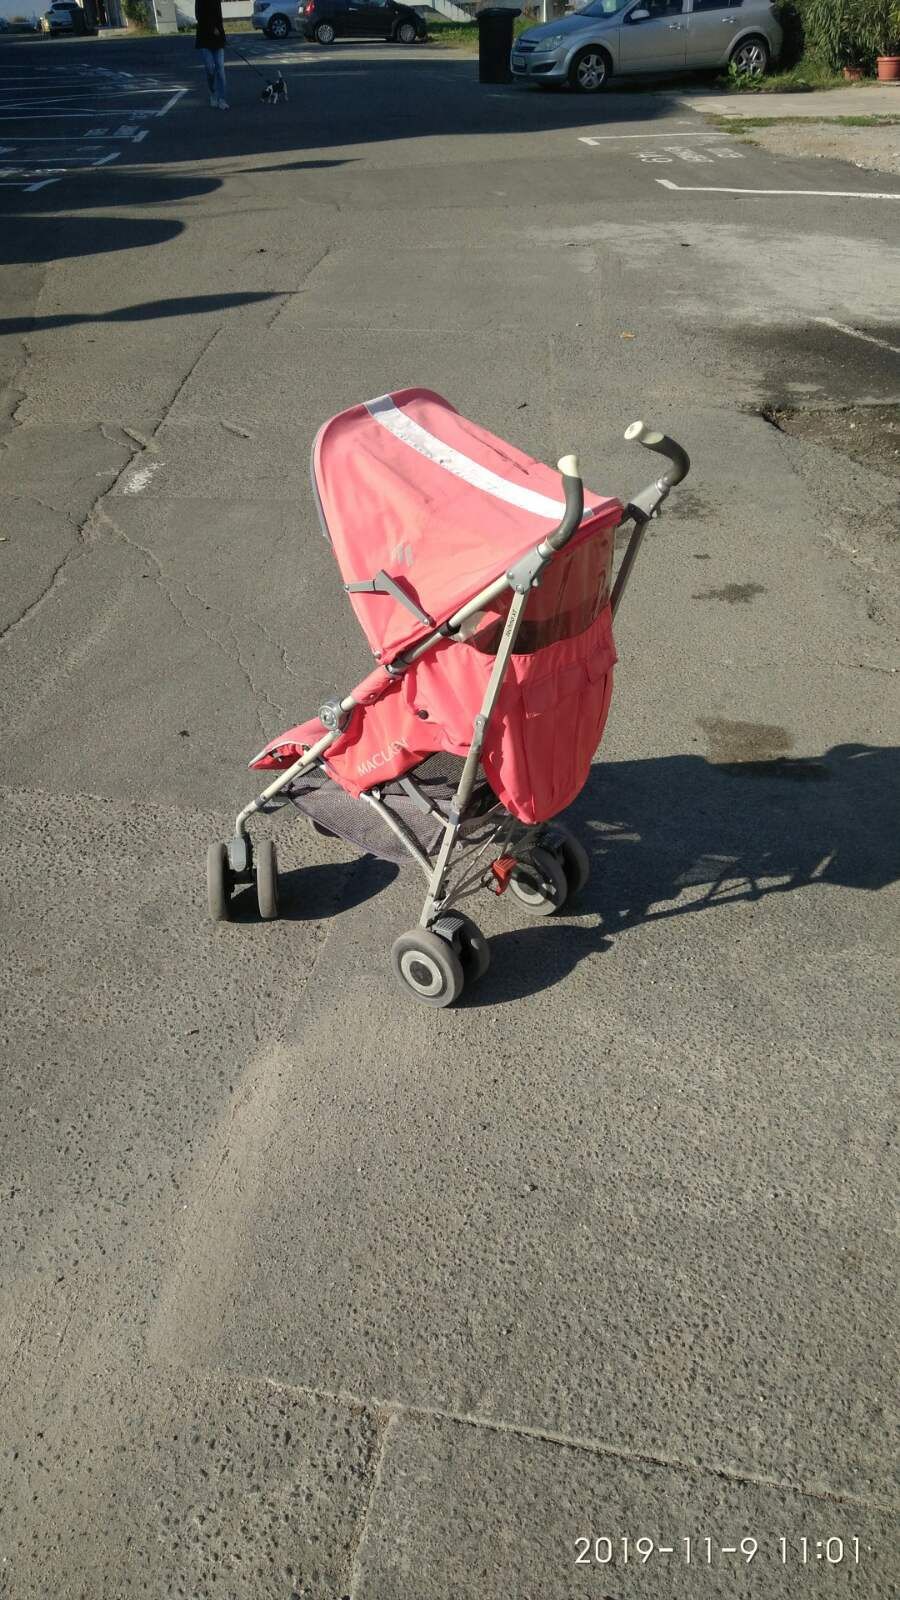 Maclaren XT детска количка